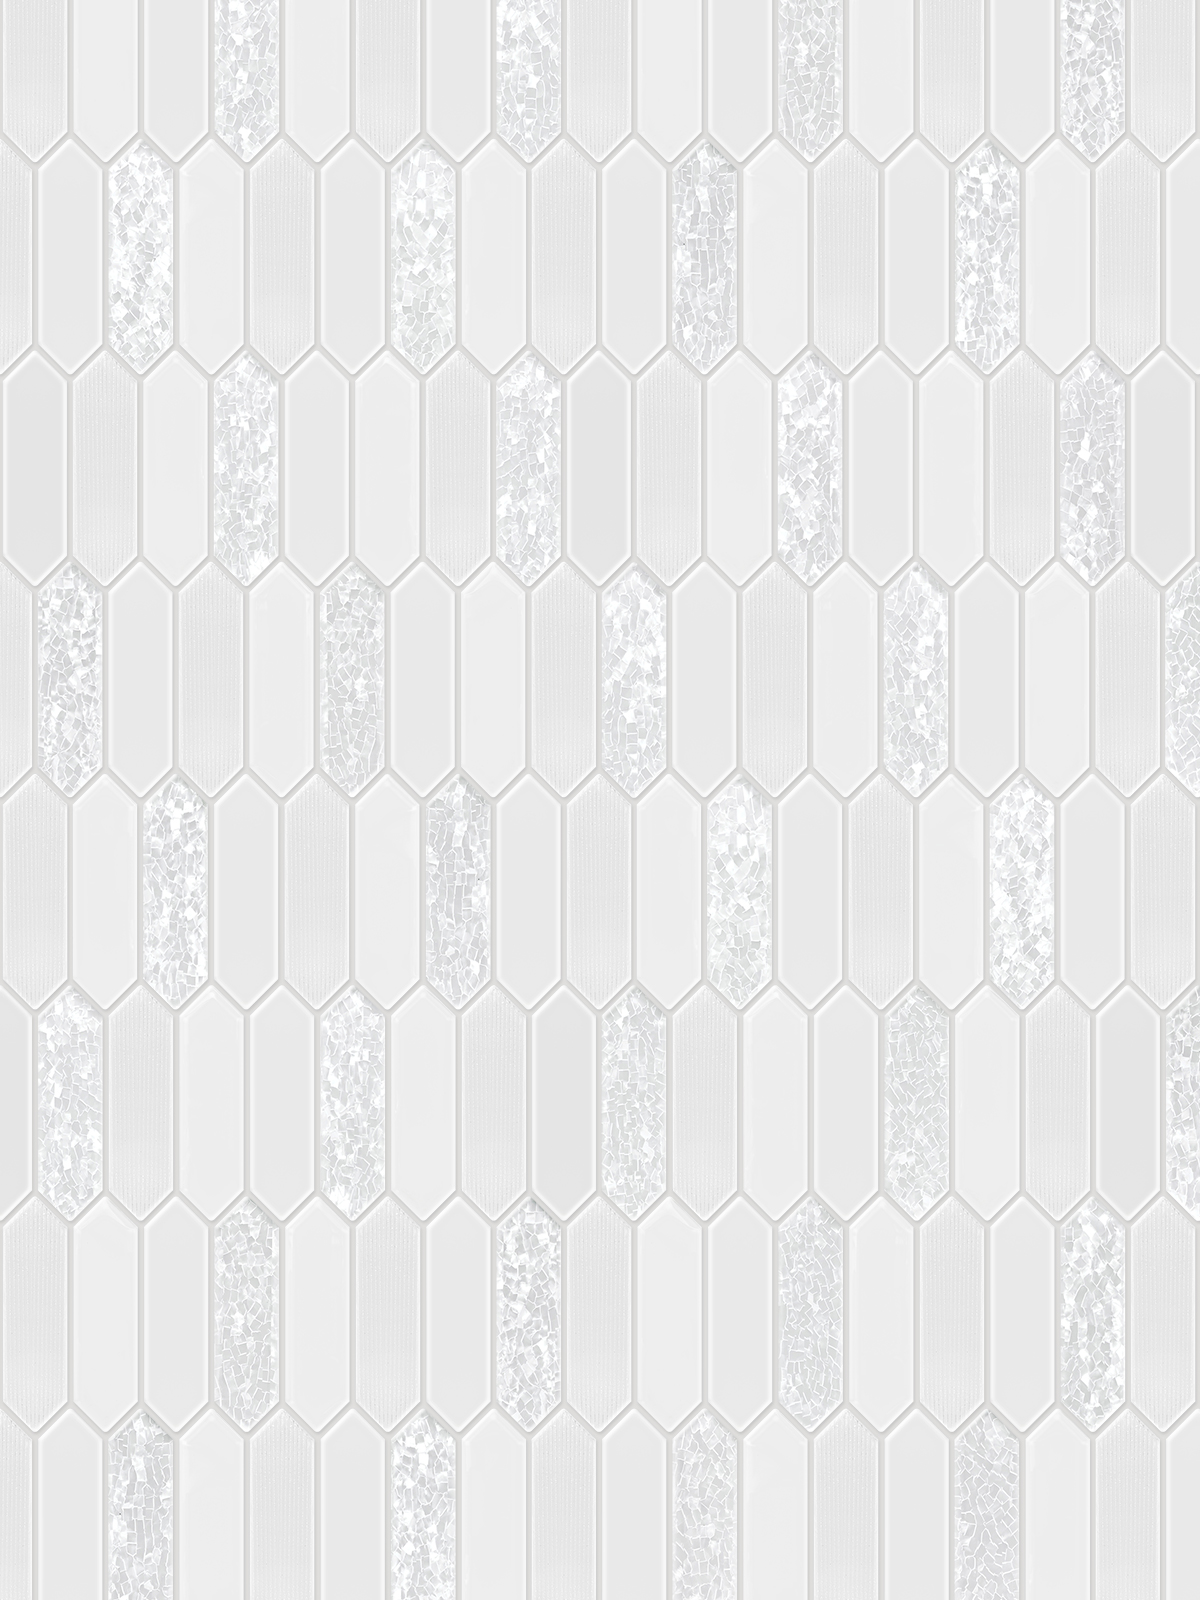 Glass Sparkle Pearl Picket Backsplash Tile BA6709 6